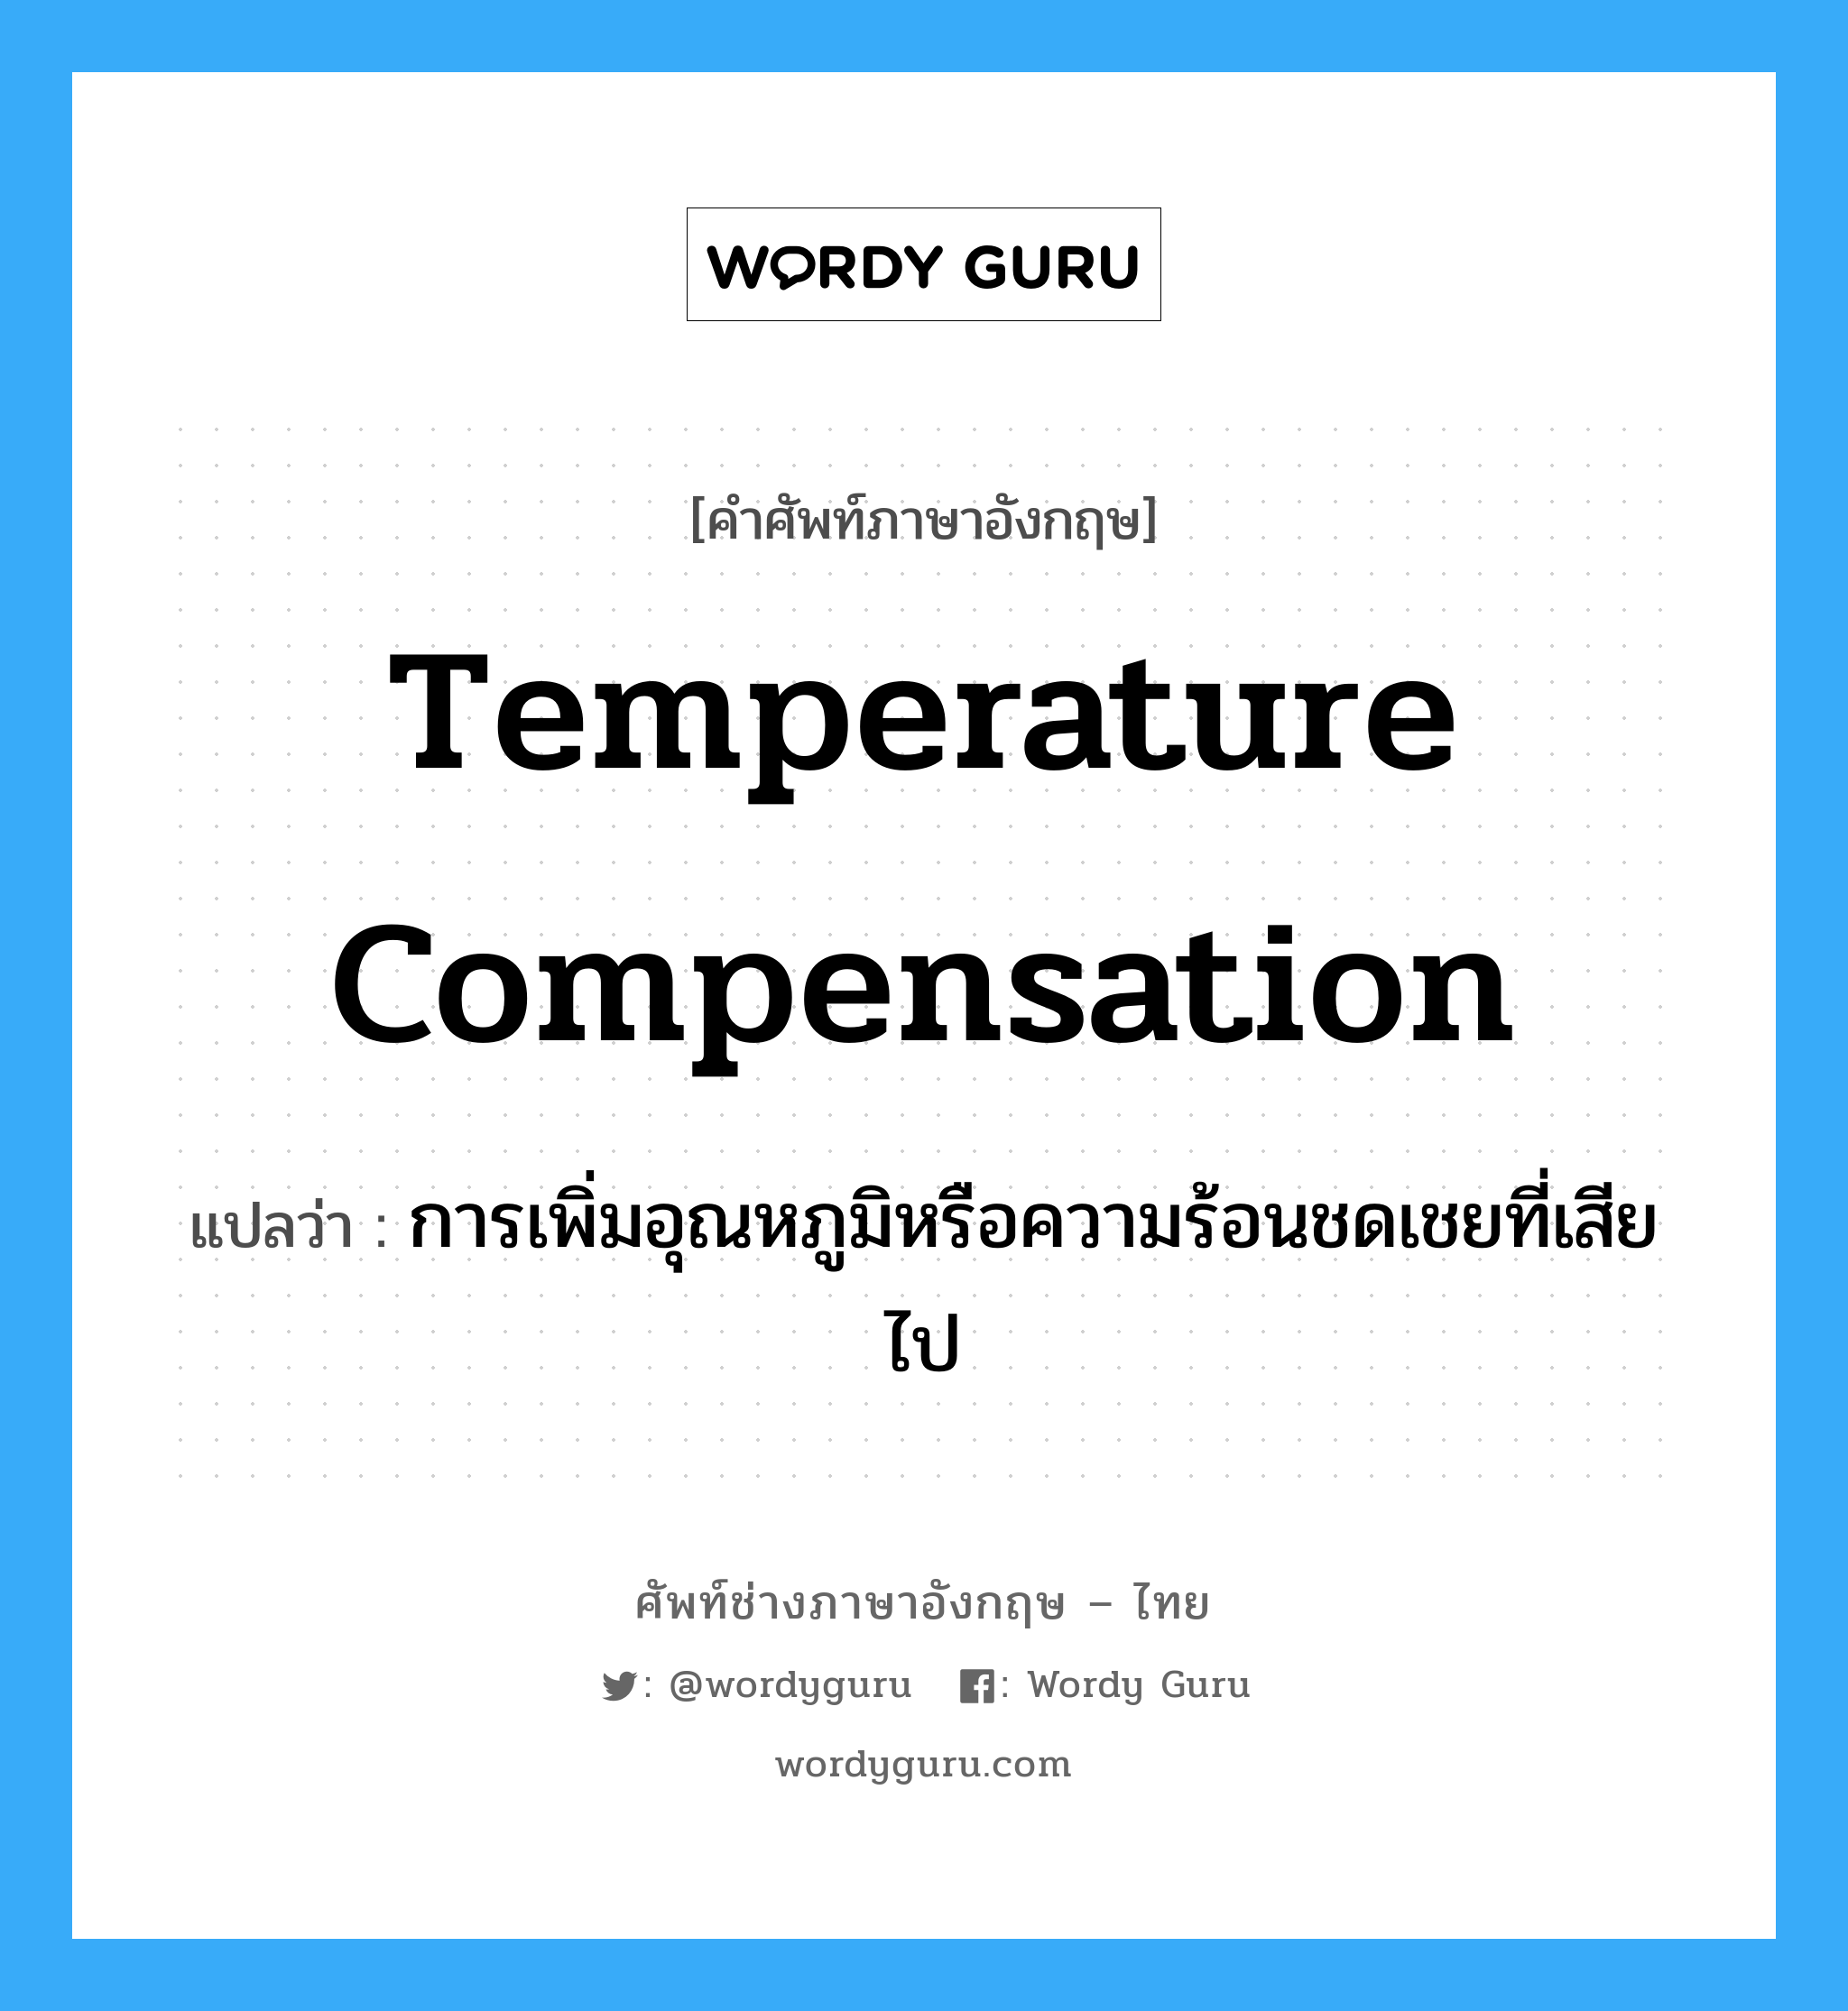 temperature compensation แปลว่า?, คำศัพท์ช่างภาษาอังกฤษ - ไทย temperature compensation คำศัพท์ภาษาอังกฤษ temperature compensation แปลว่า การเพิ่มอุณหภูมิหรือความร้อนชดเชยที่เสียไป